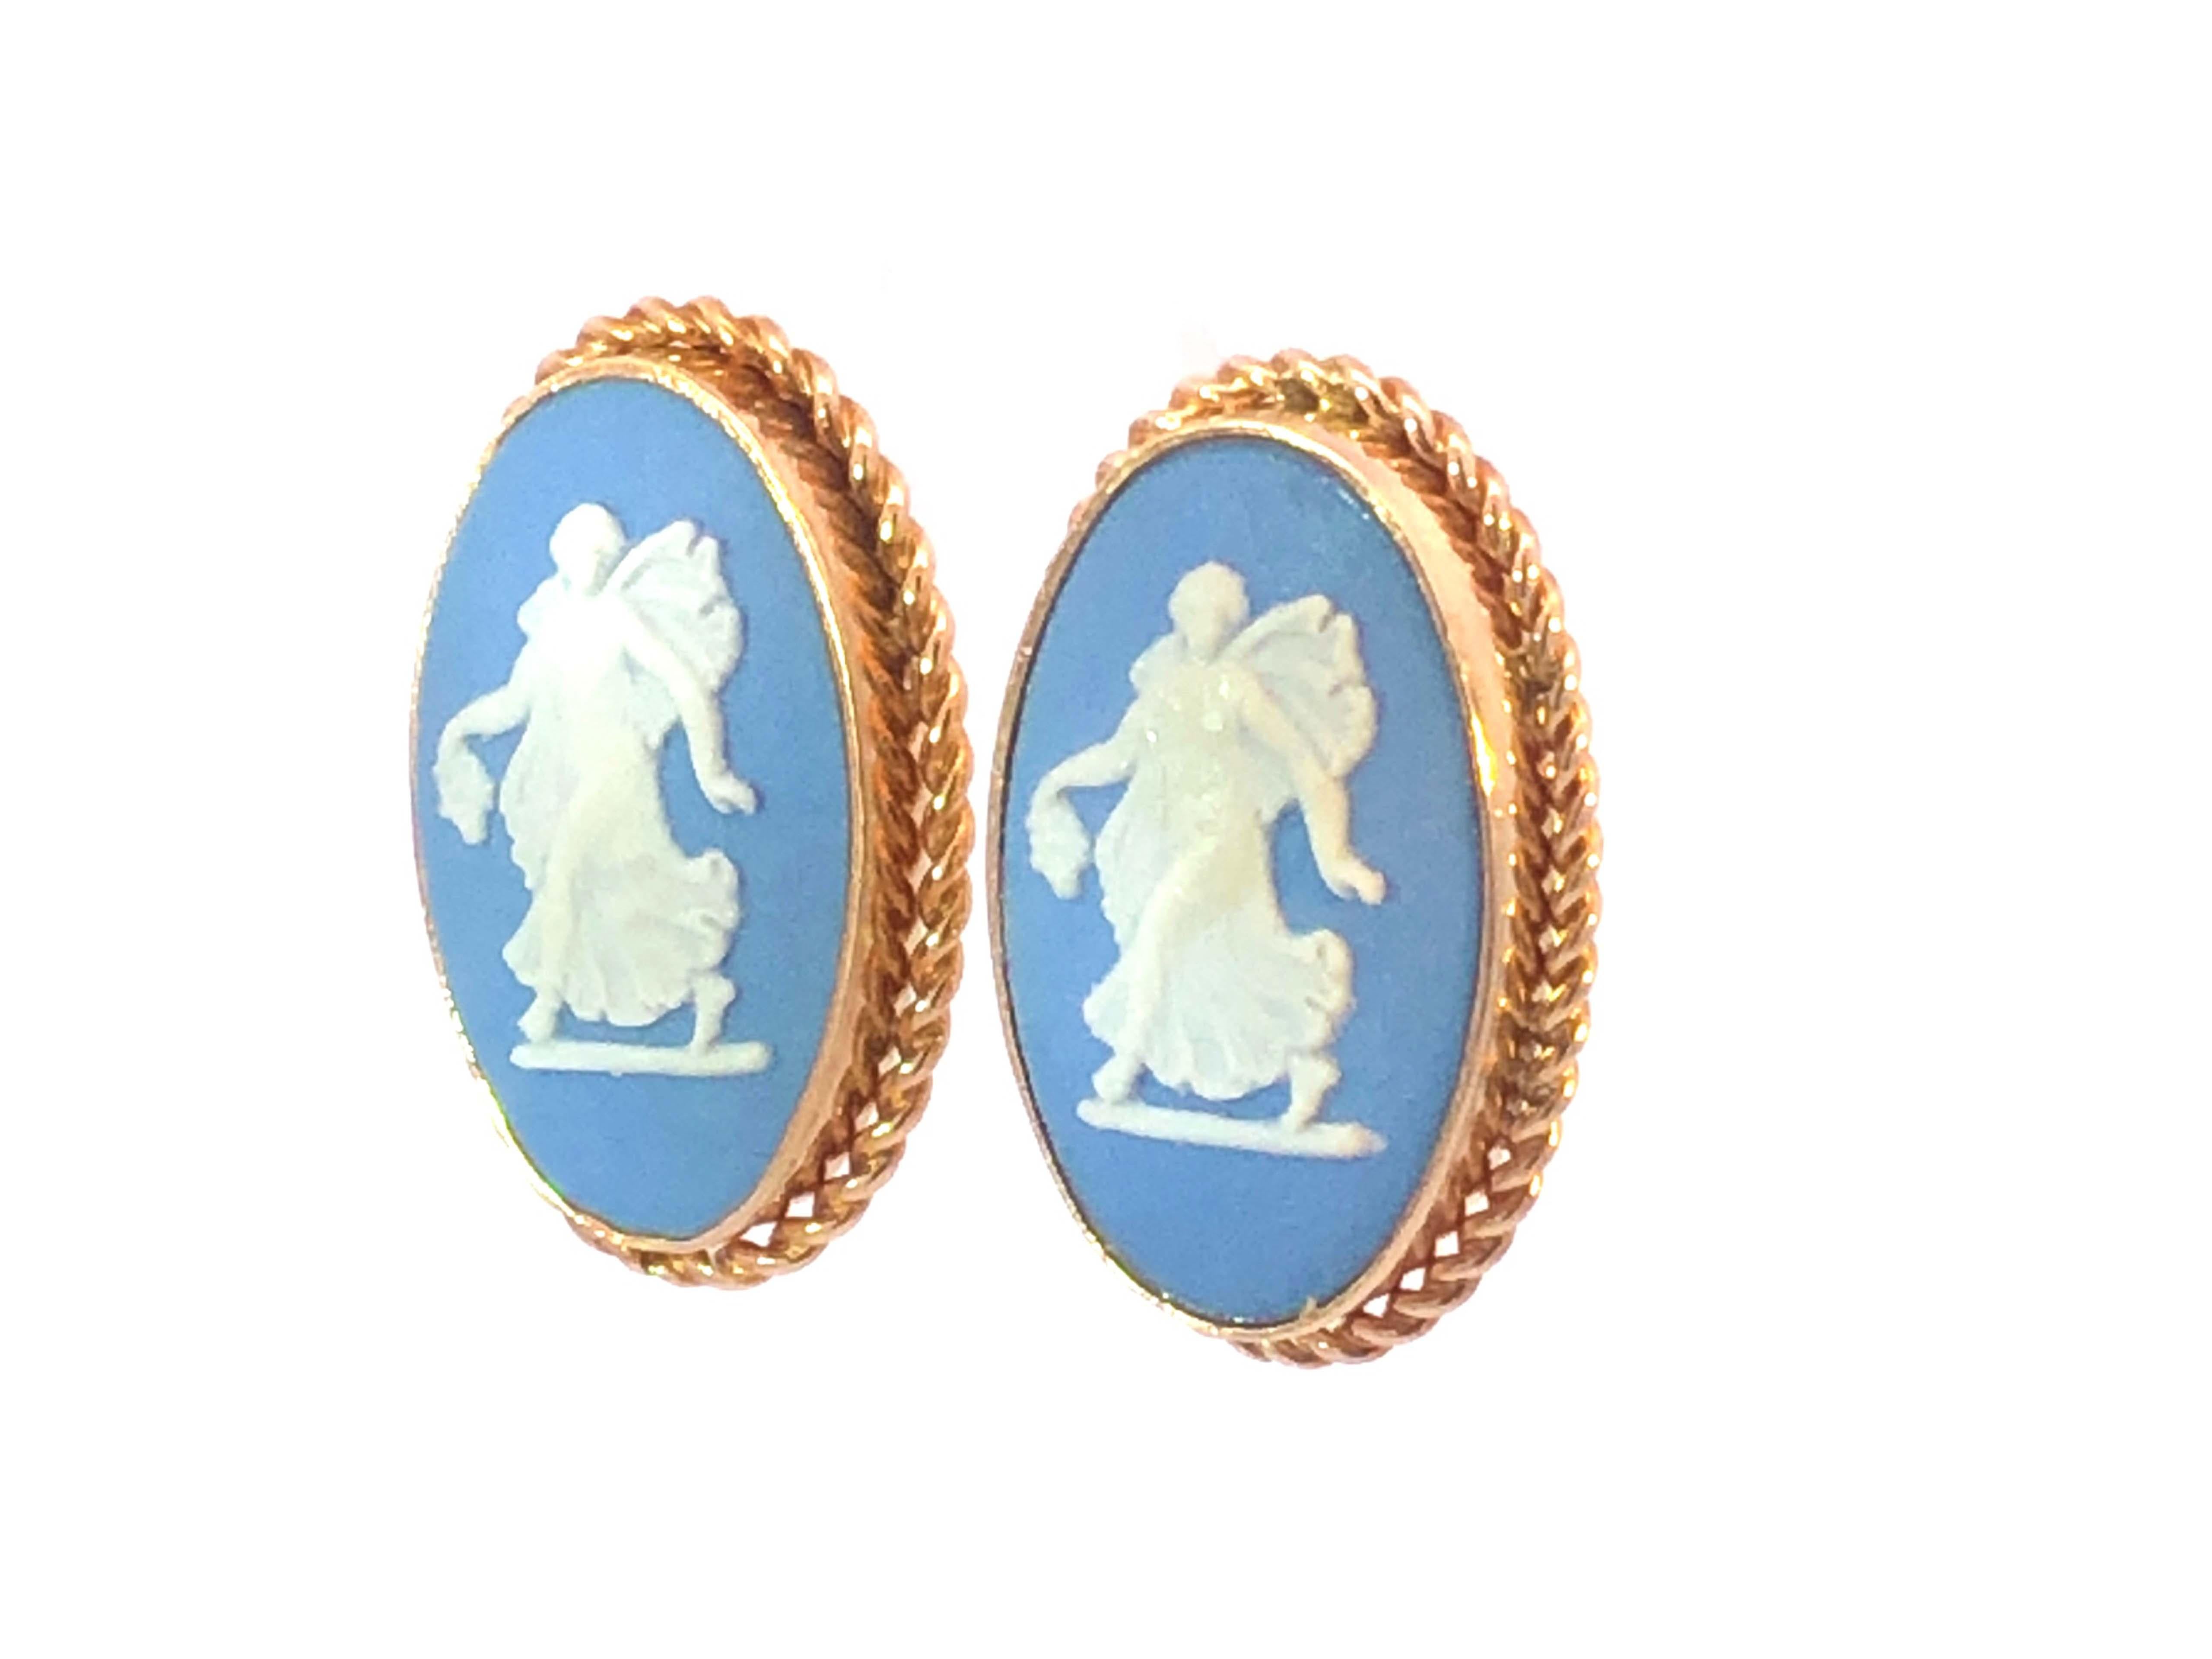 Oval Cut Wedgwood Jasper Wear Blue Oval Earrings & Pendant Brooch Set in 14K Yellow Gold For Sale